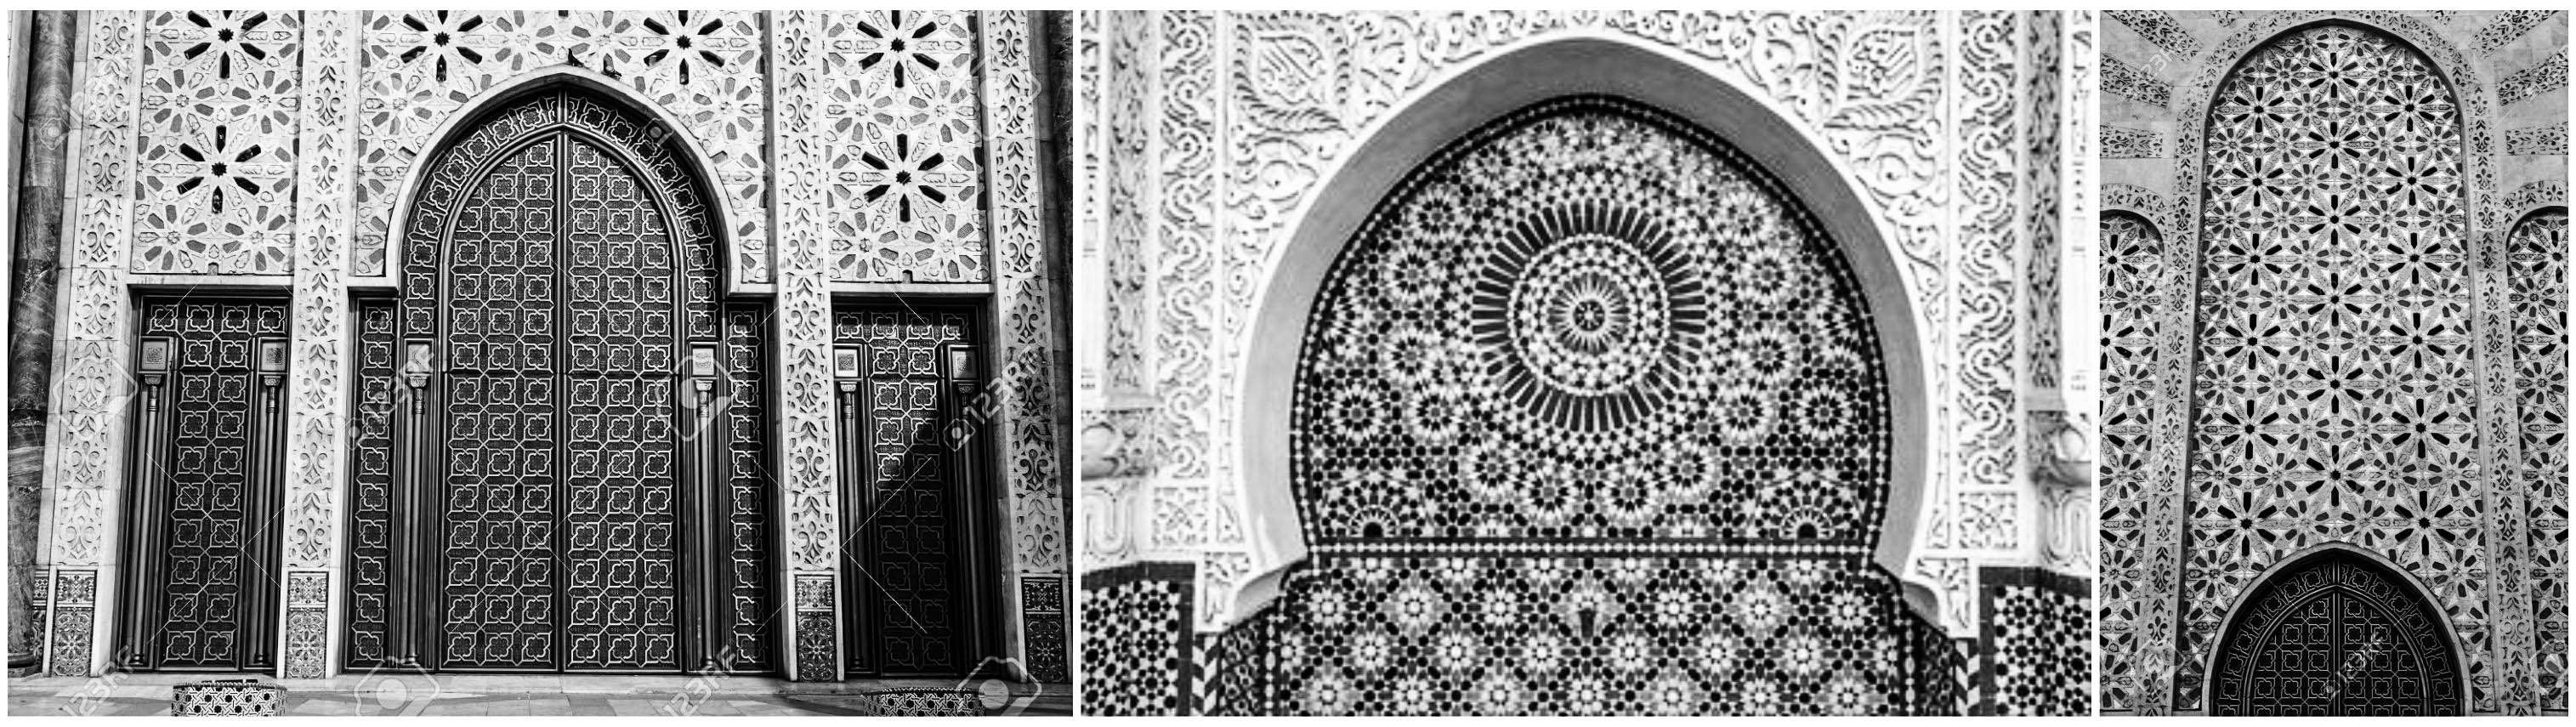 Ornamen dalam suatu masjid menunjukkan keindahan yang mengundang ketakjuban dan nilai spiritualitas. (Foto: Ilustrasi)